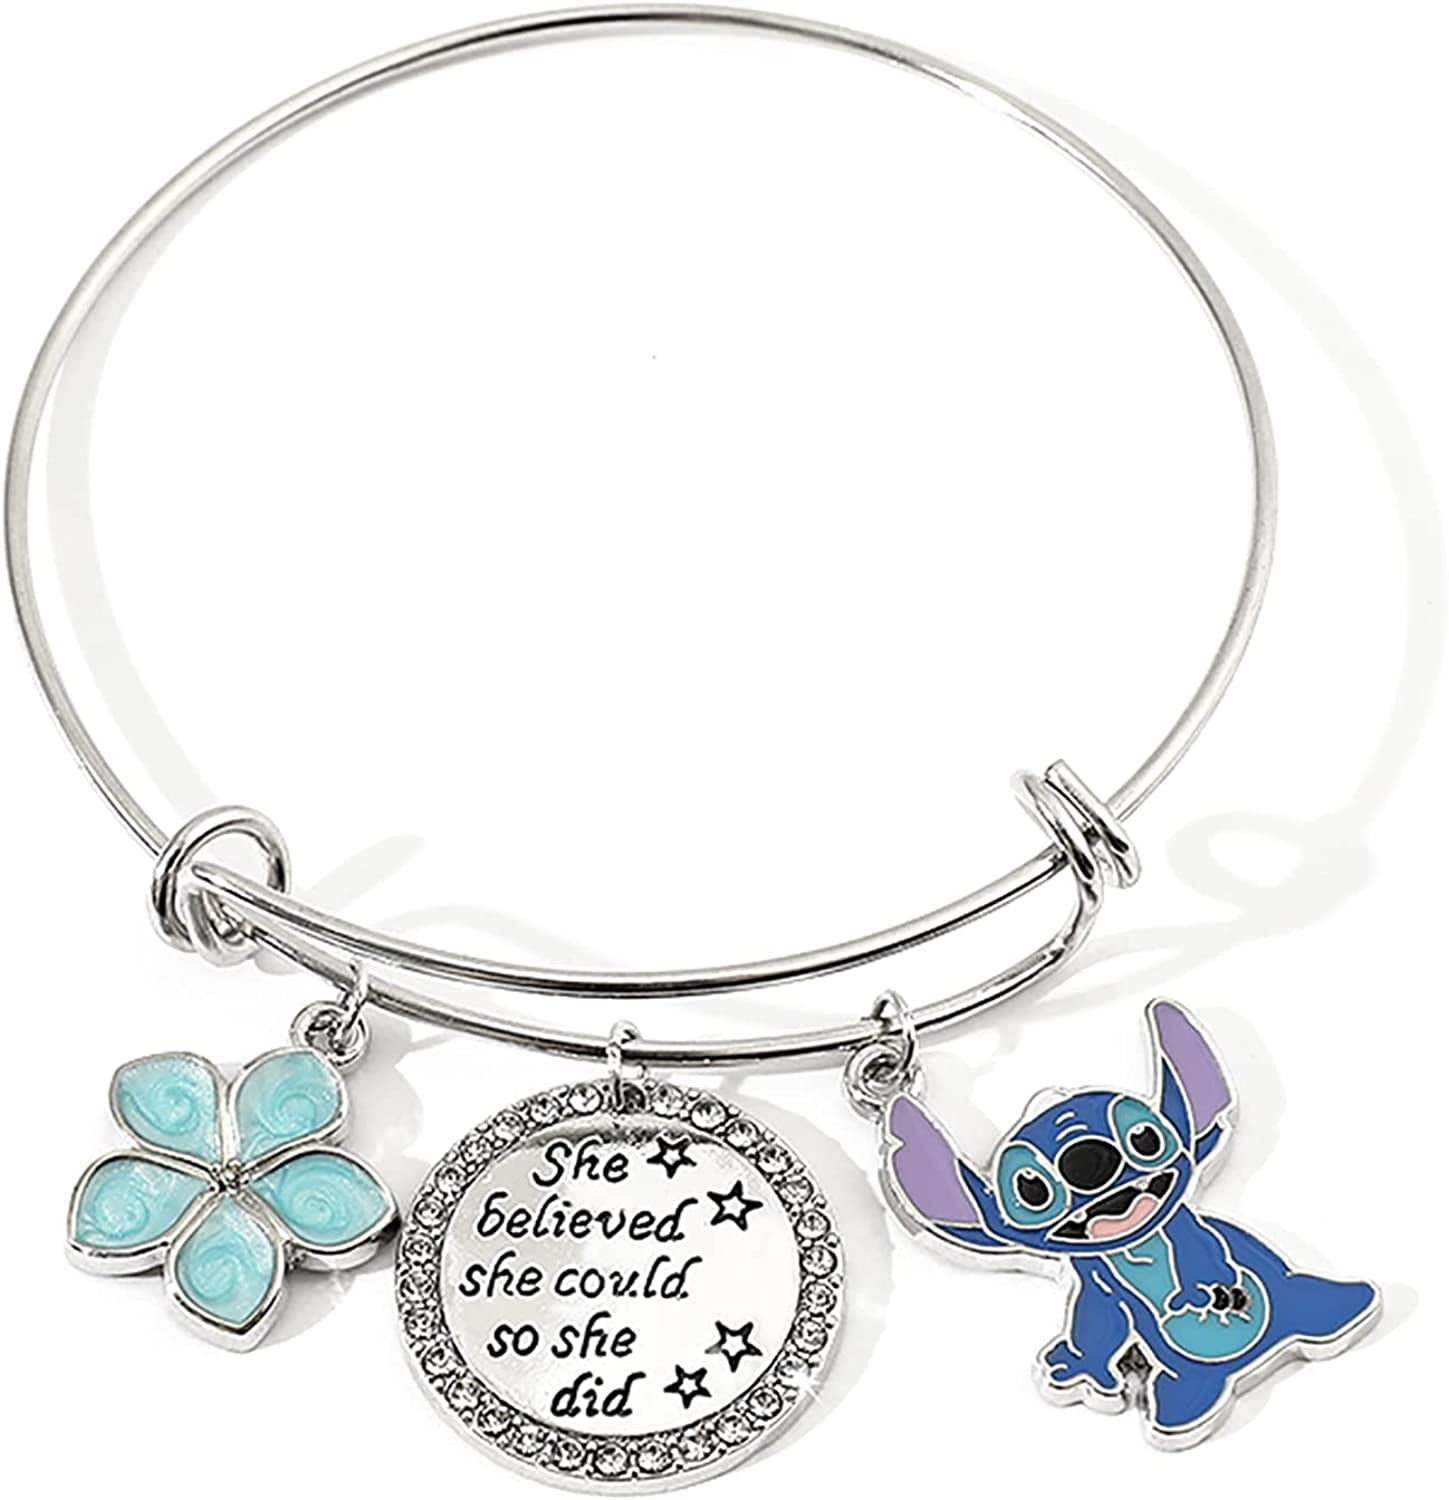 Disney Stitch Jewelry Cartoon Film Lilo & Stitch Pearl Bracelet